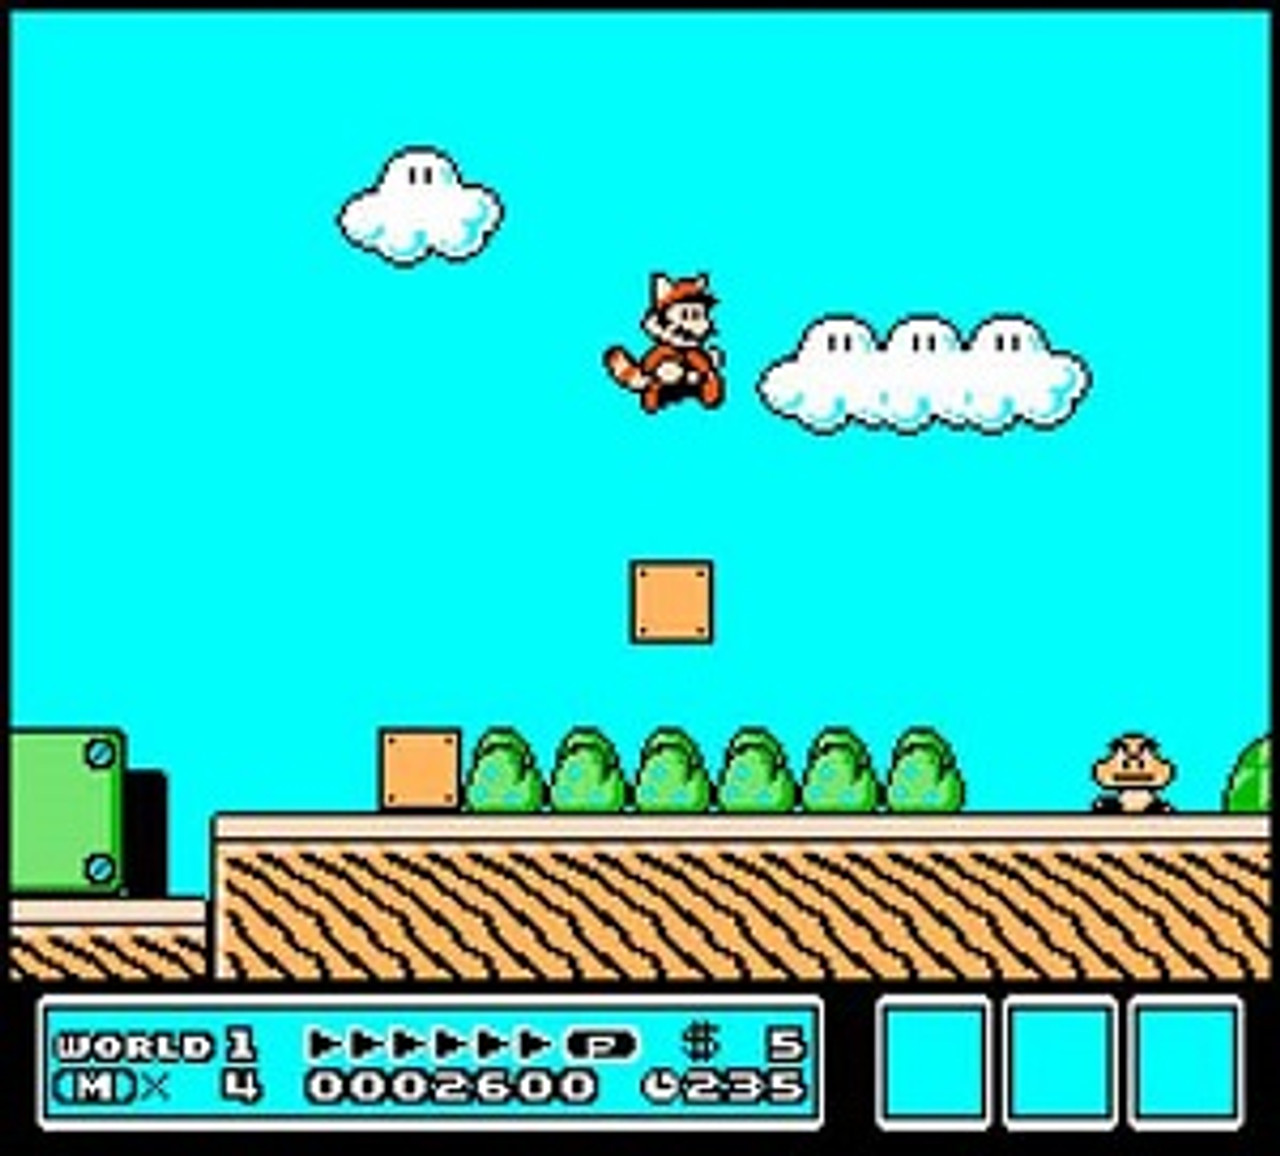 Super Mario Bros. 3 (NES) : Nintendo : Free Download, Borrow, and